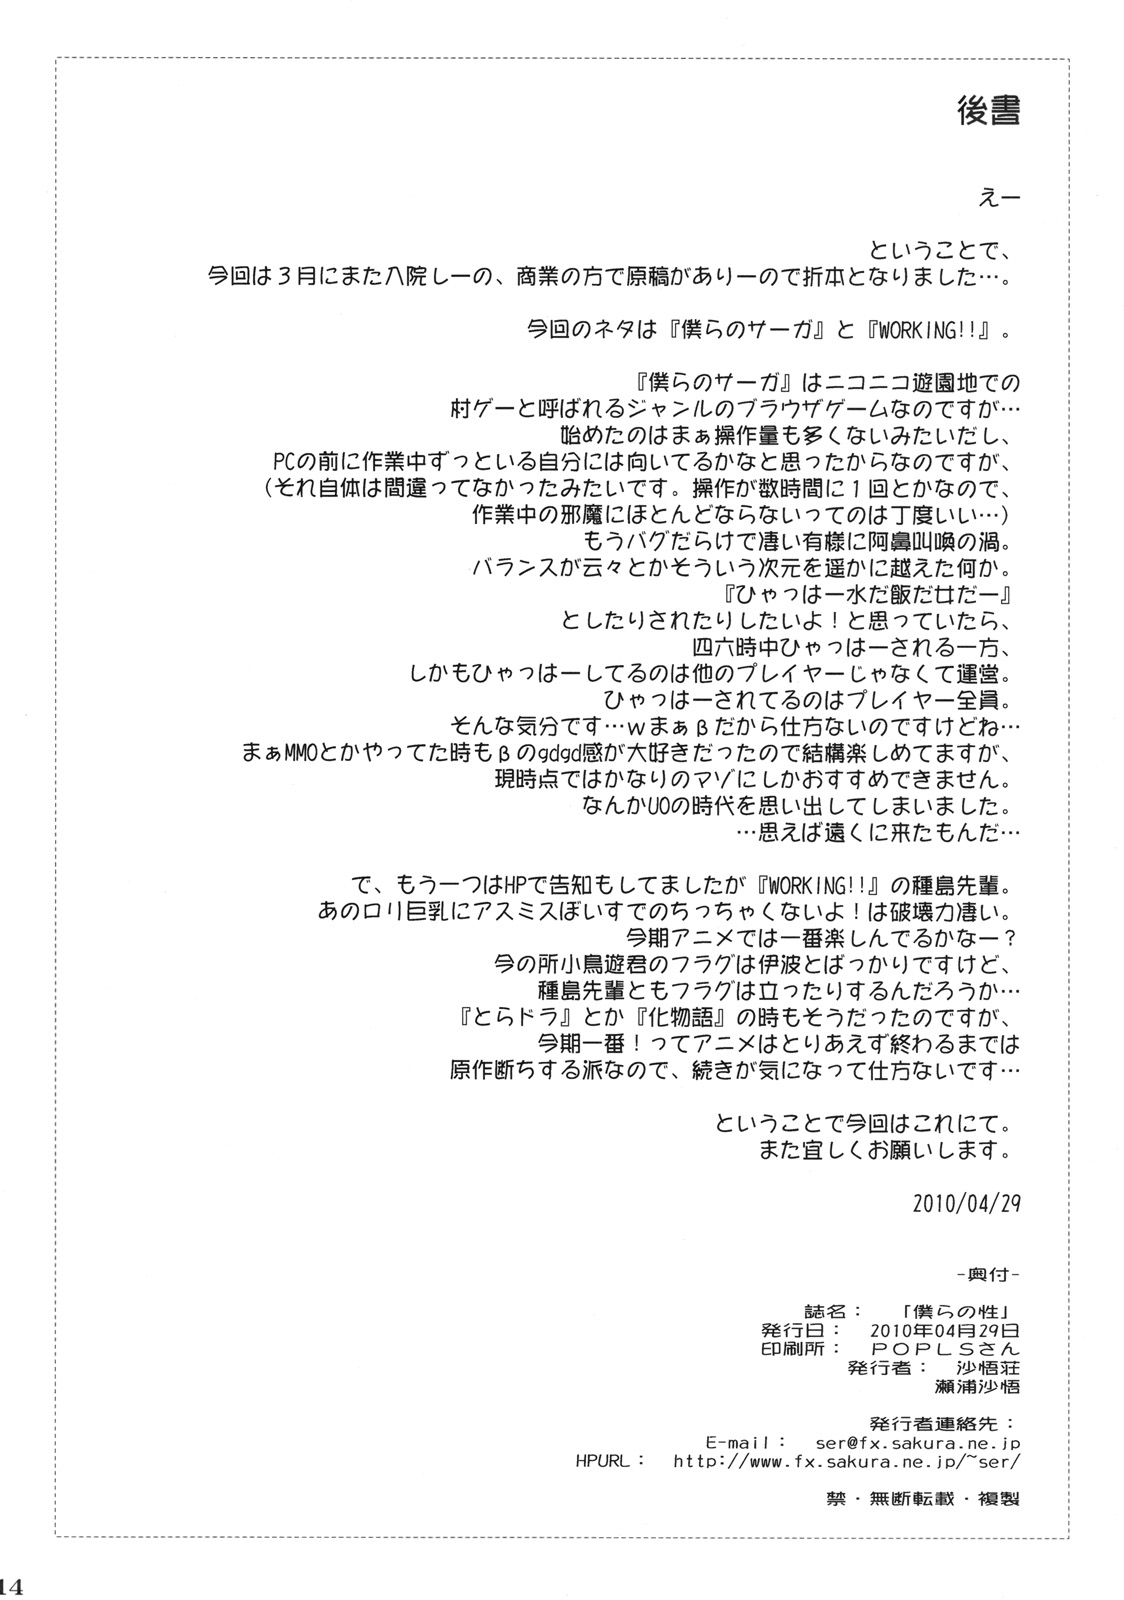 (COMIC1☆4) [Sago-Jou (Seura Isago)] Bokura no Sei (Bokura no Saga、WORKING!!) (COMIC1☆4) (同人誌) [沙悟荘 (瀬浦沙悟)] 僕らの性 (僕らのサーガ、WORKING!!)